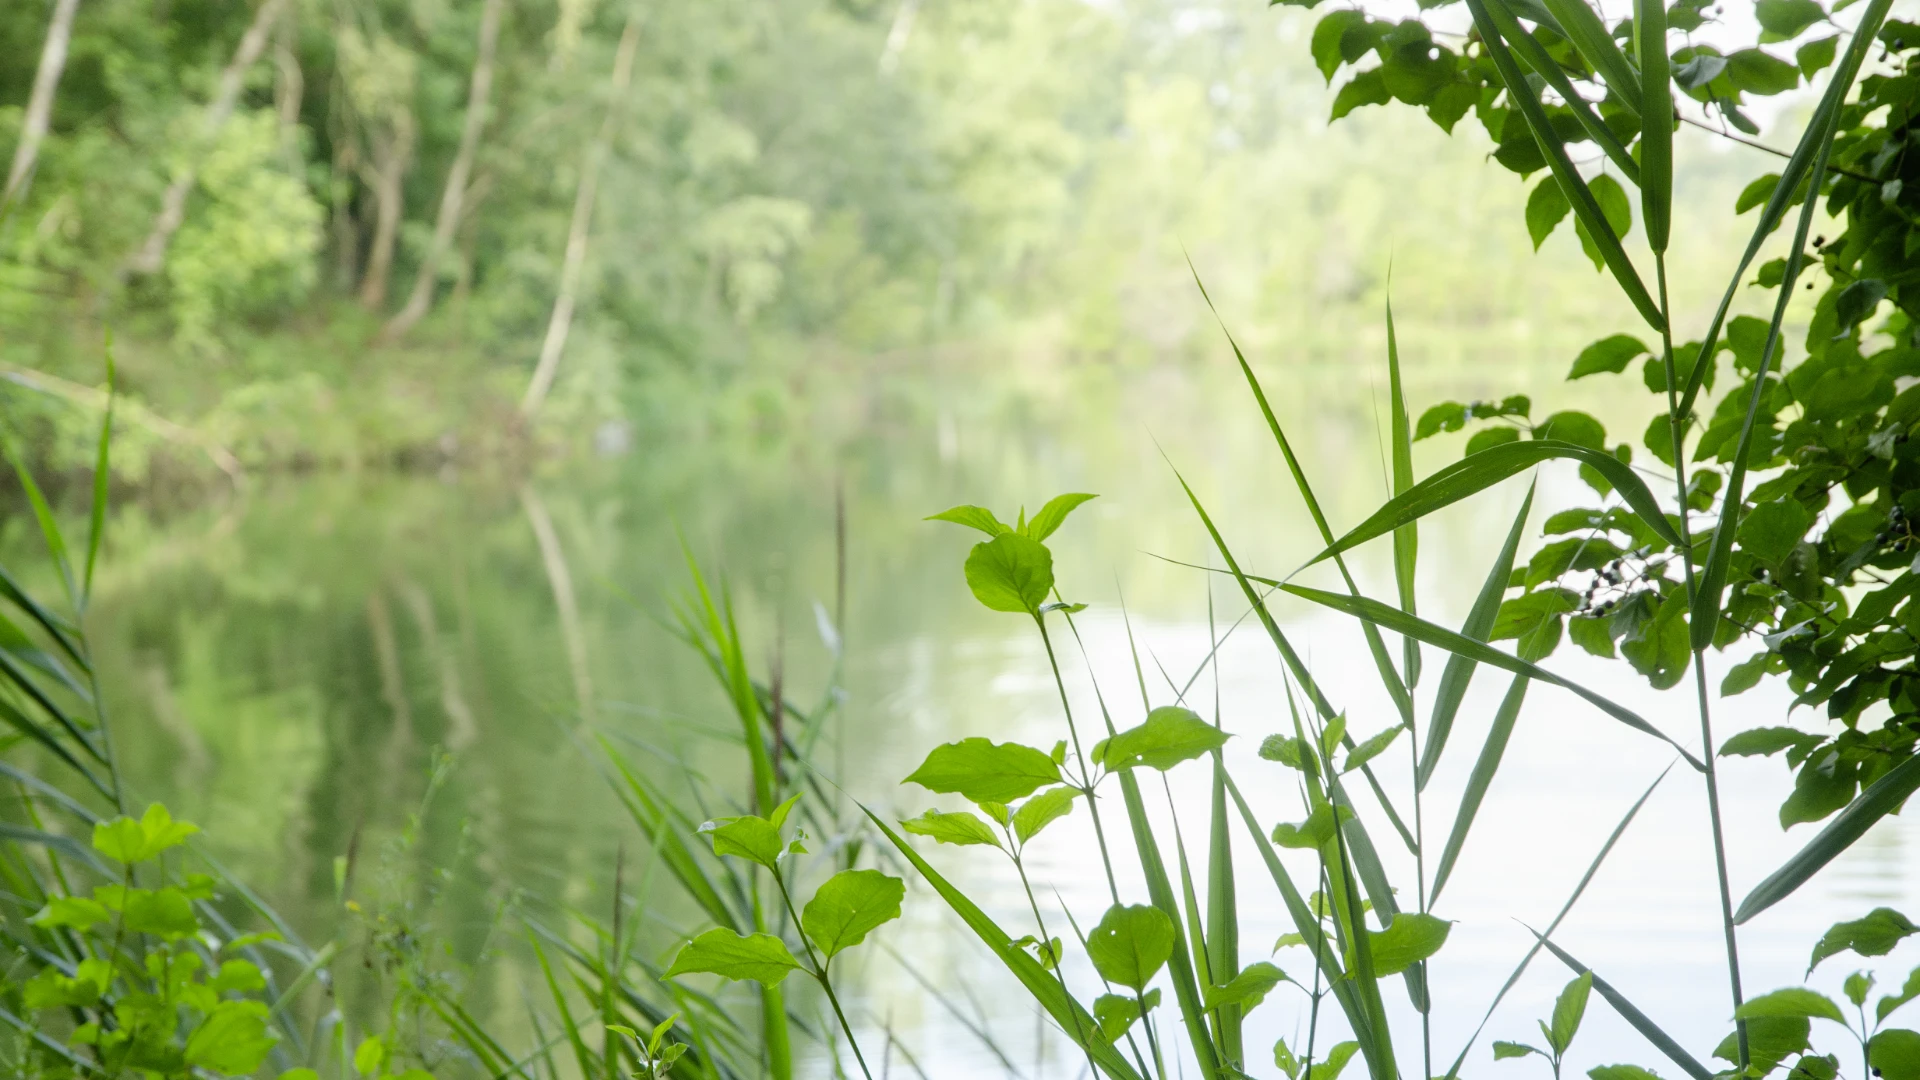 Entspannendes Stimmungsbild mit Blättern und Gräsern vor einem See im Hintergund.